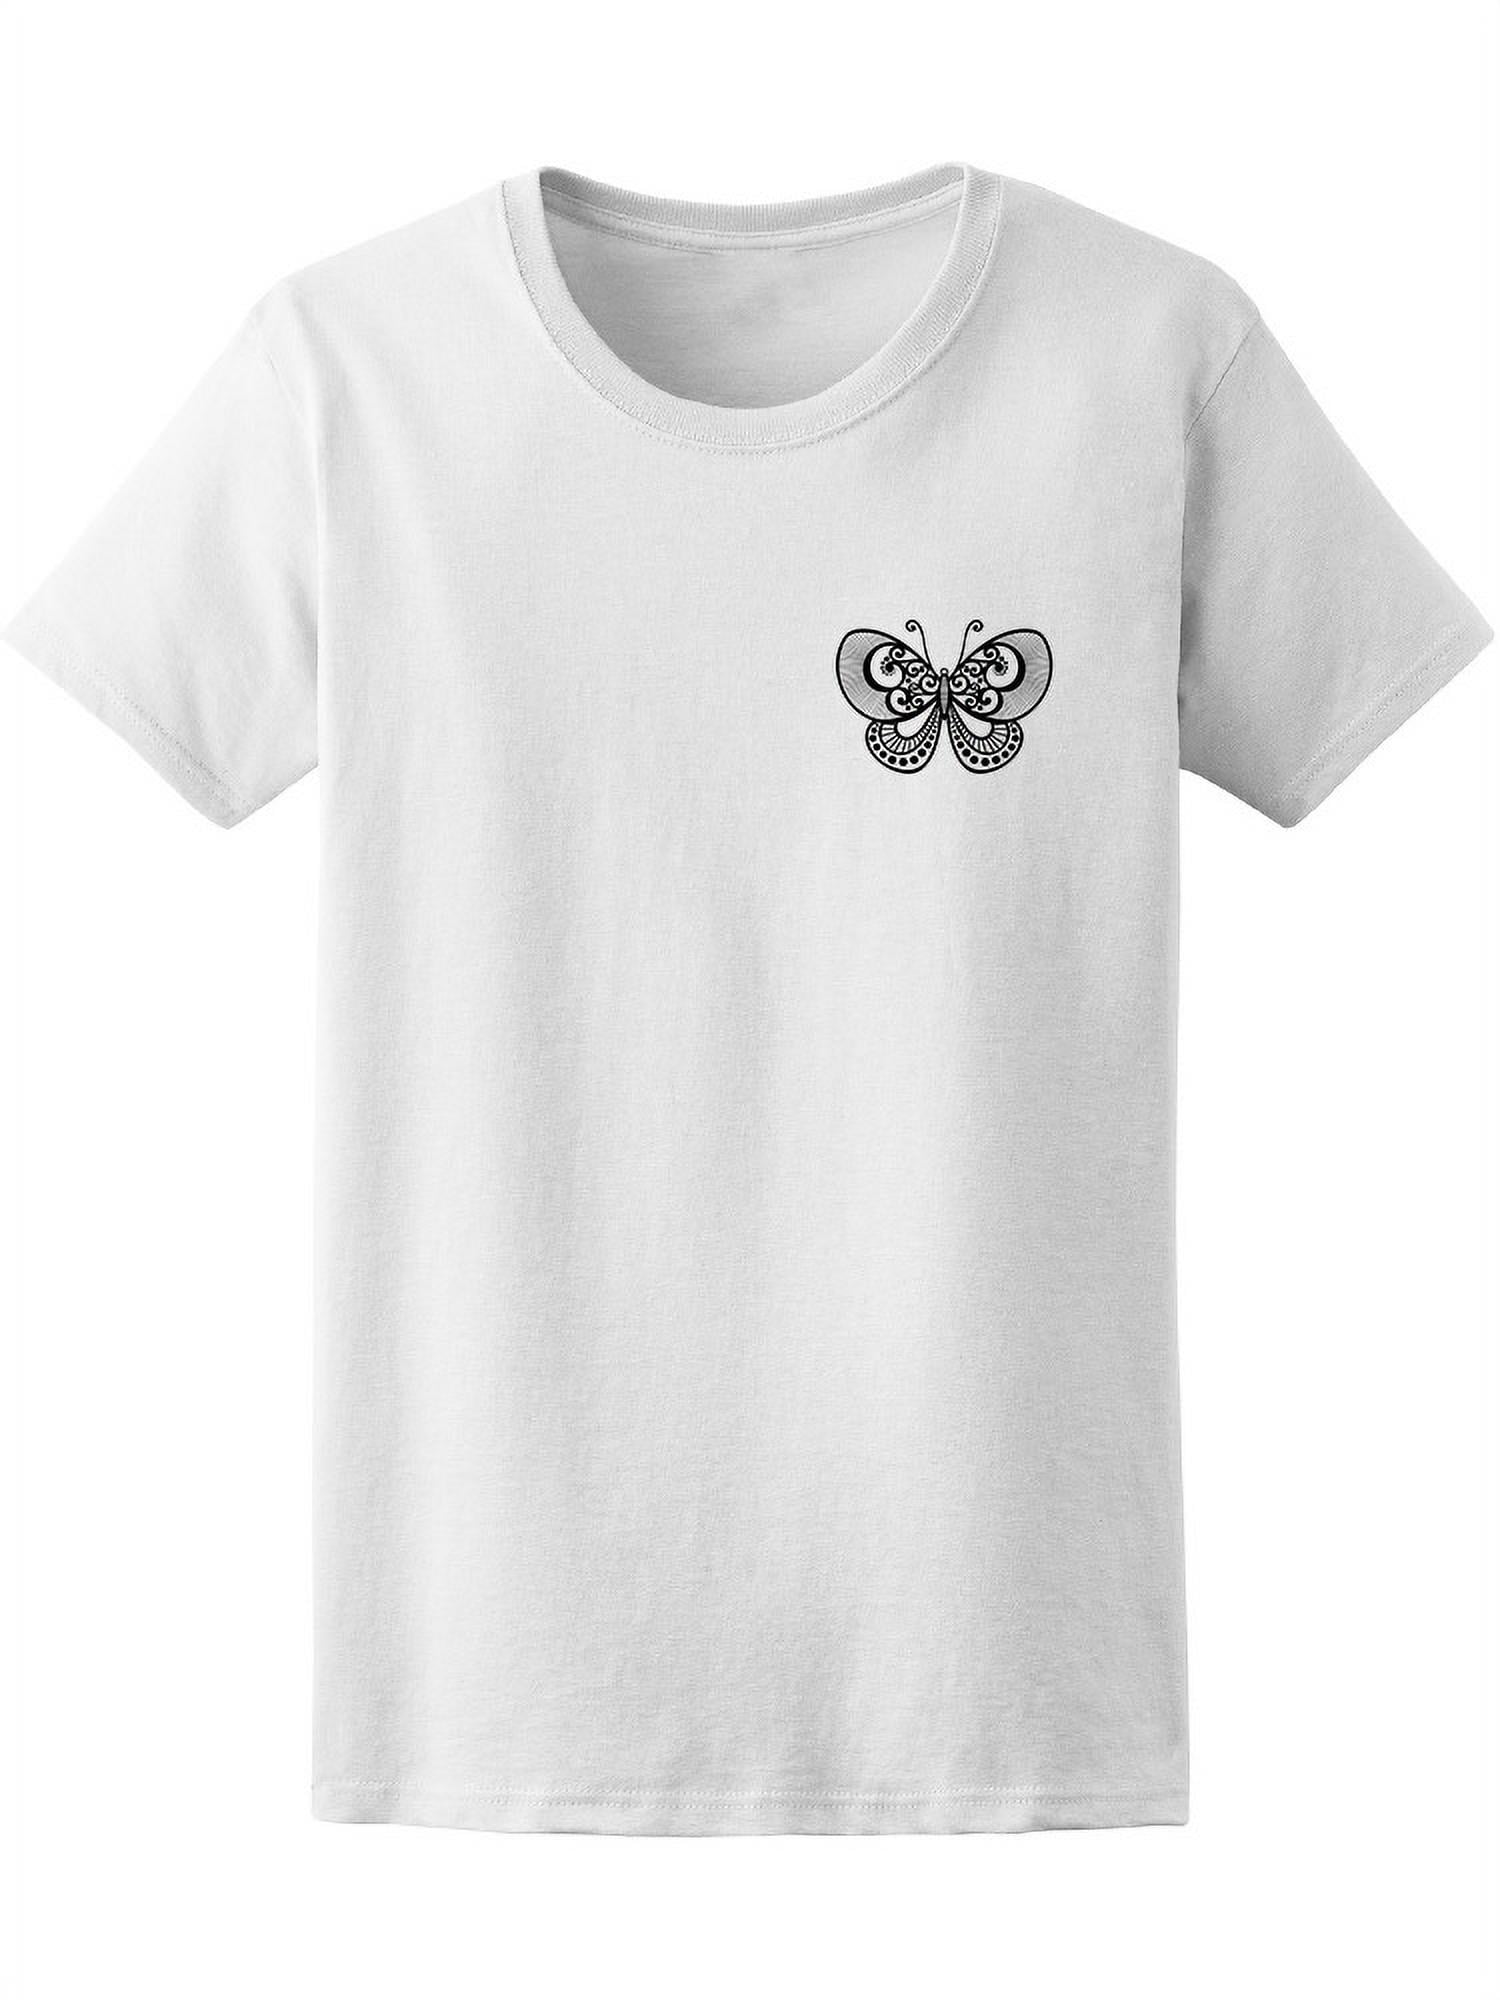 Cute Butterfly At Pocket Tee Women's -Image by Shutterstock - Walmart.com